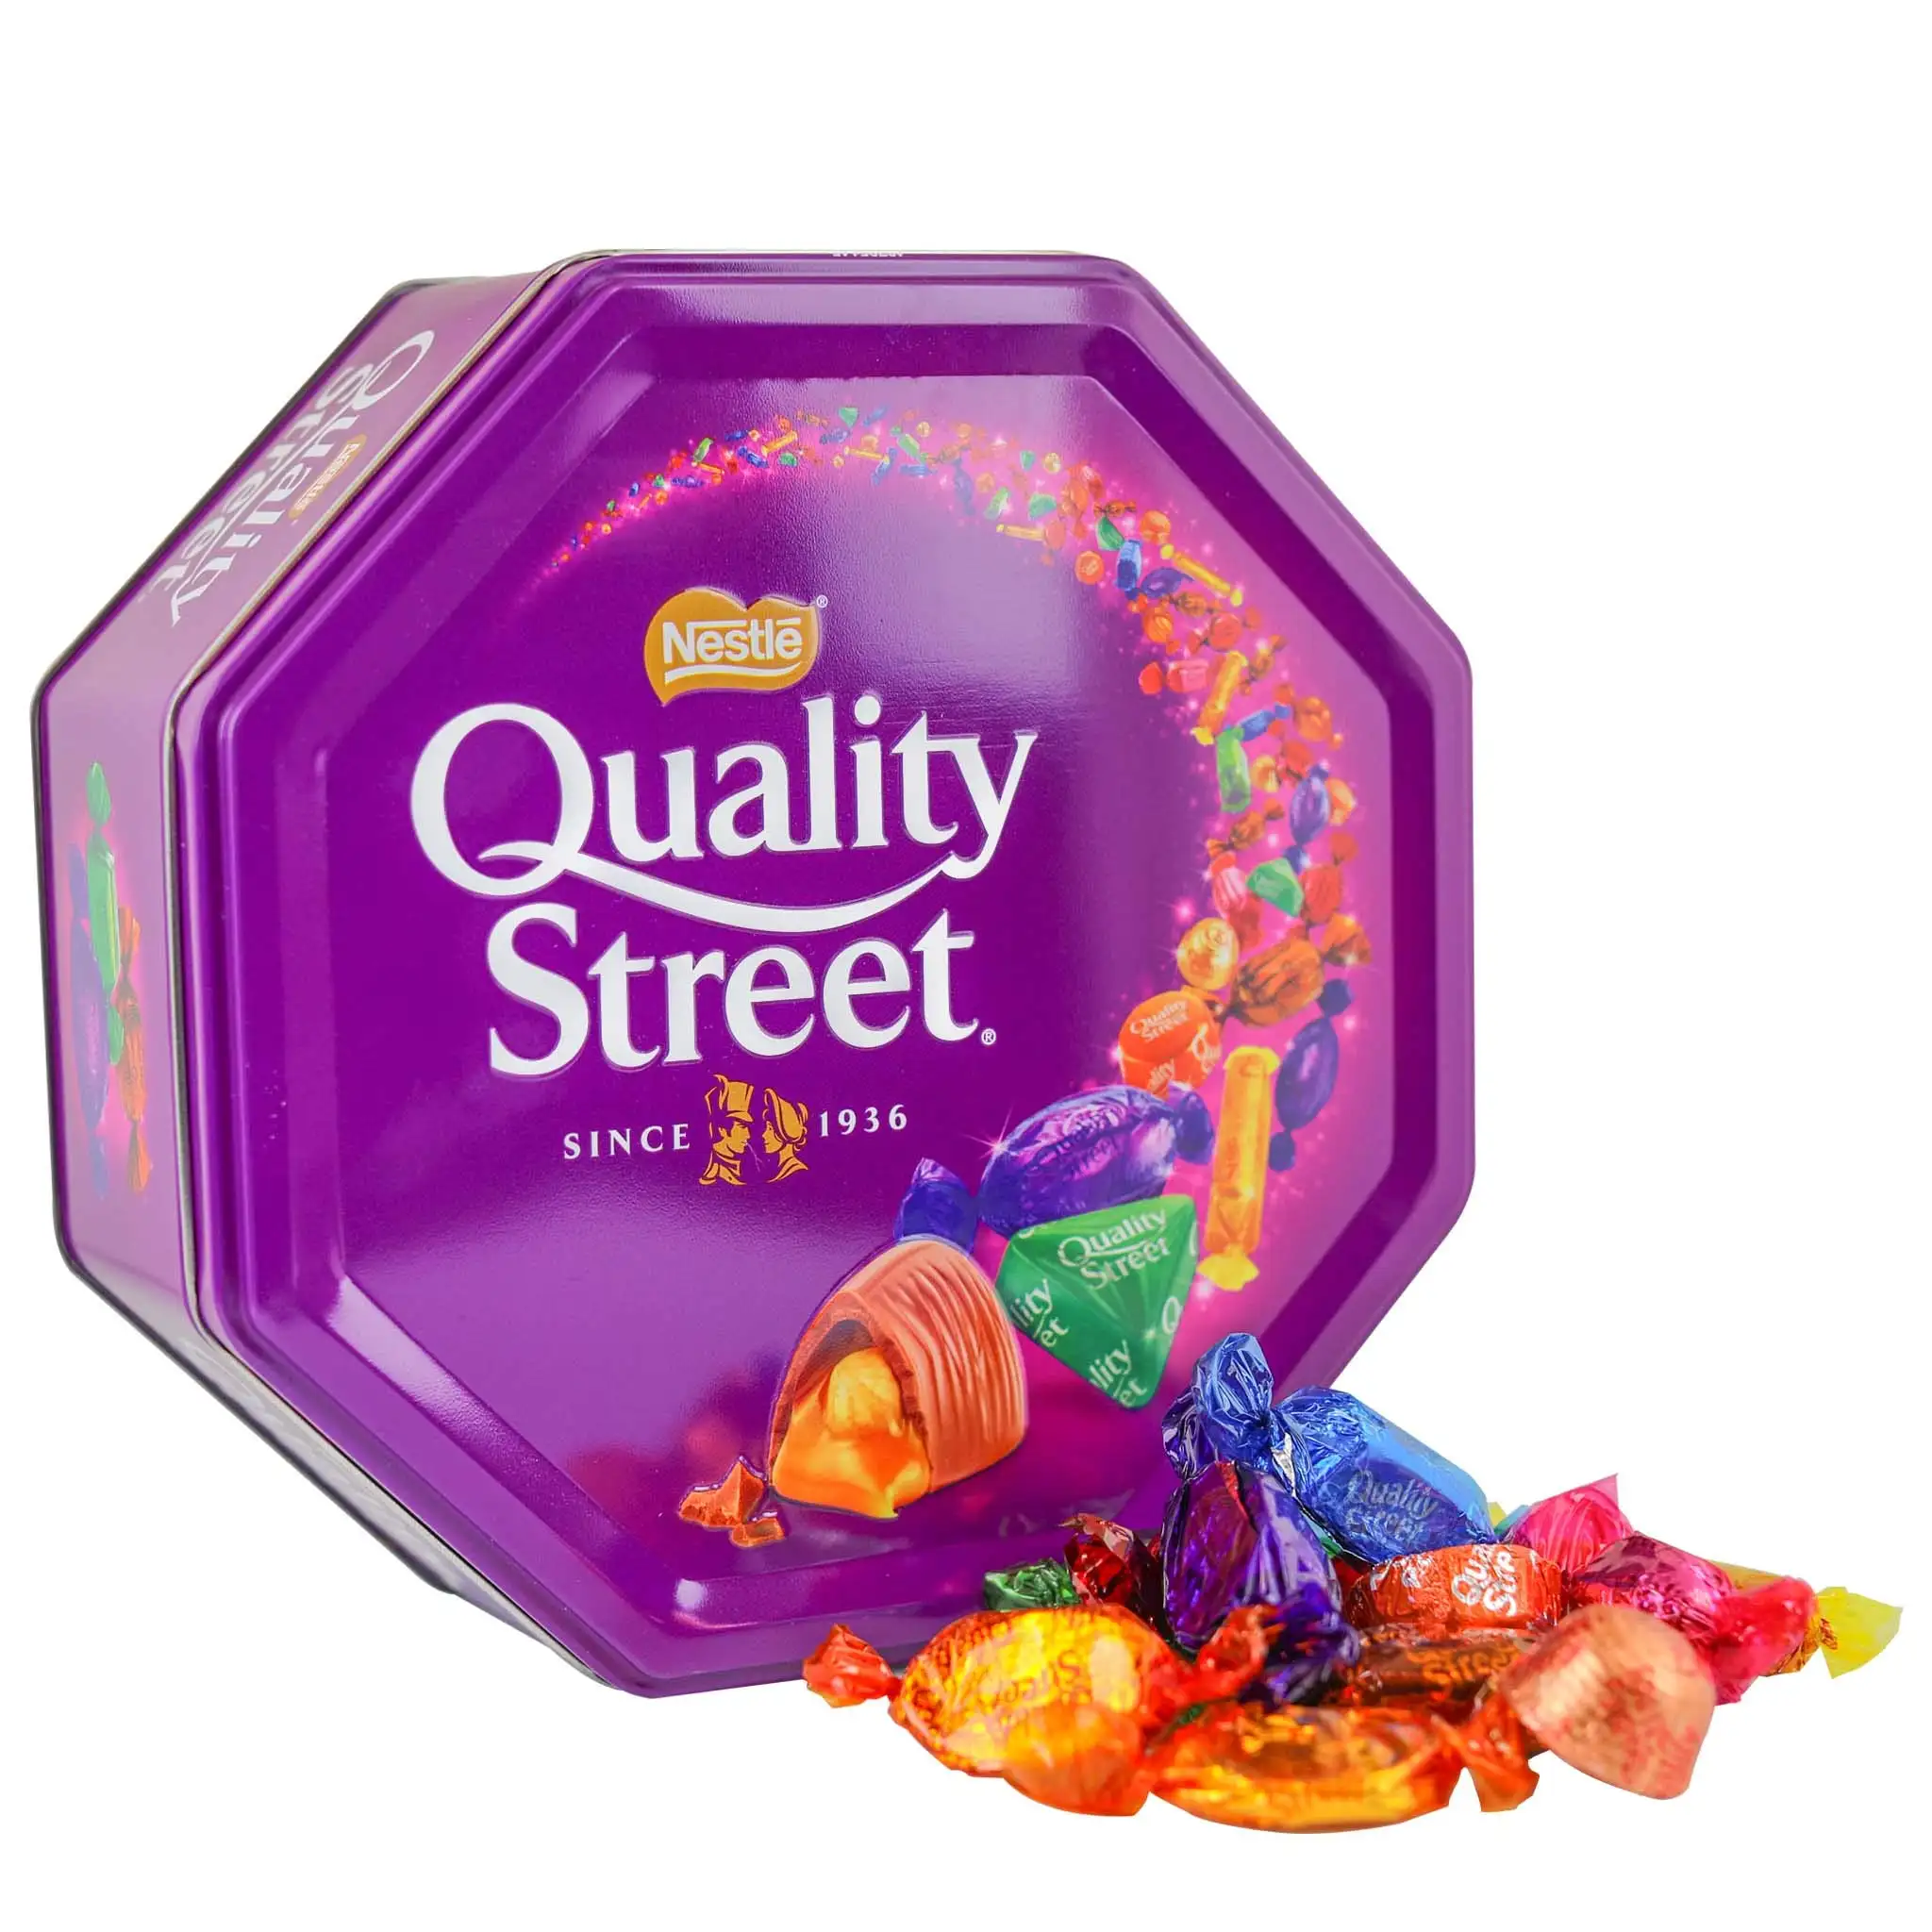 Nestle seleção de caramels e pralines finos 725g, qualidade da rua